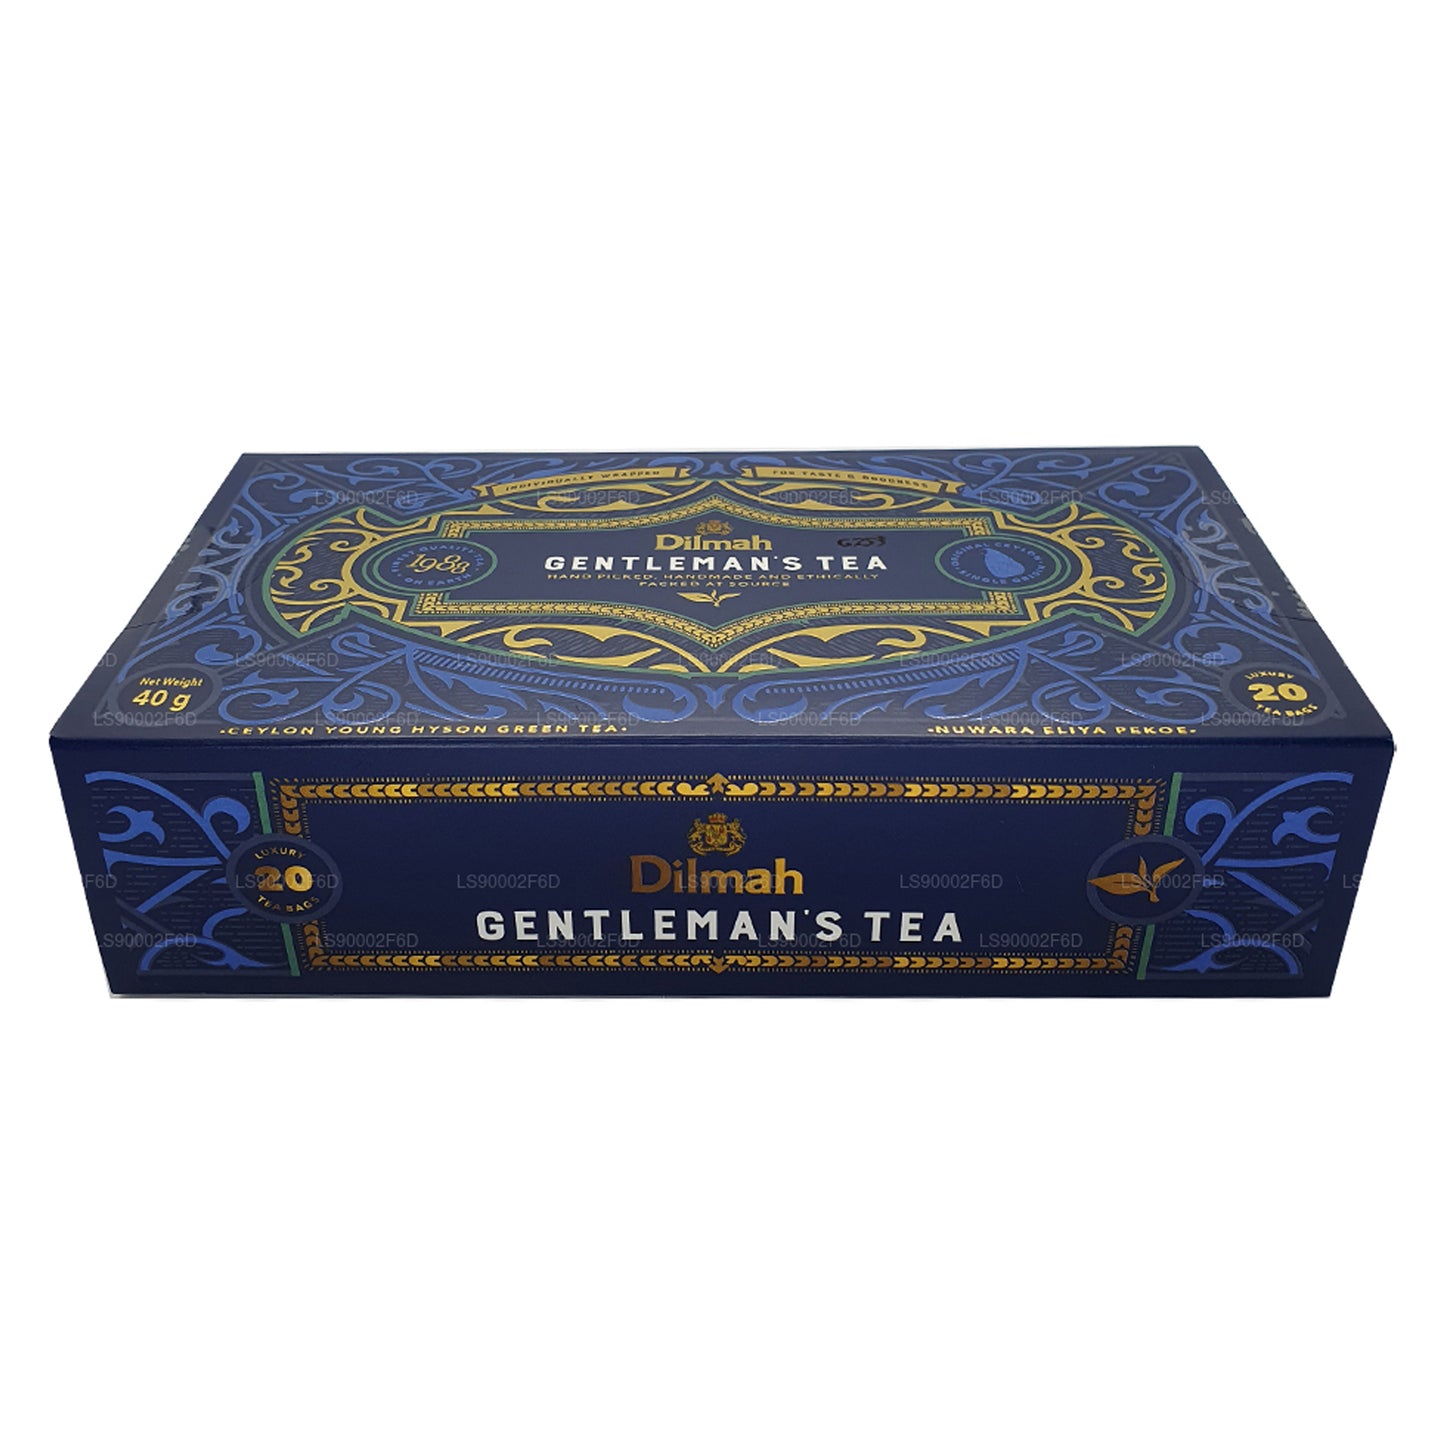 Dilmah Gentleman's Tea